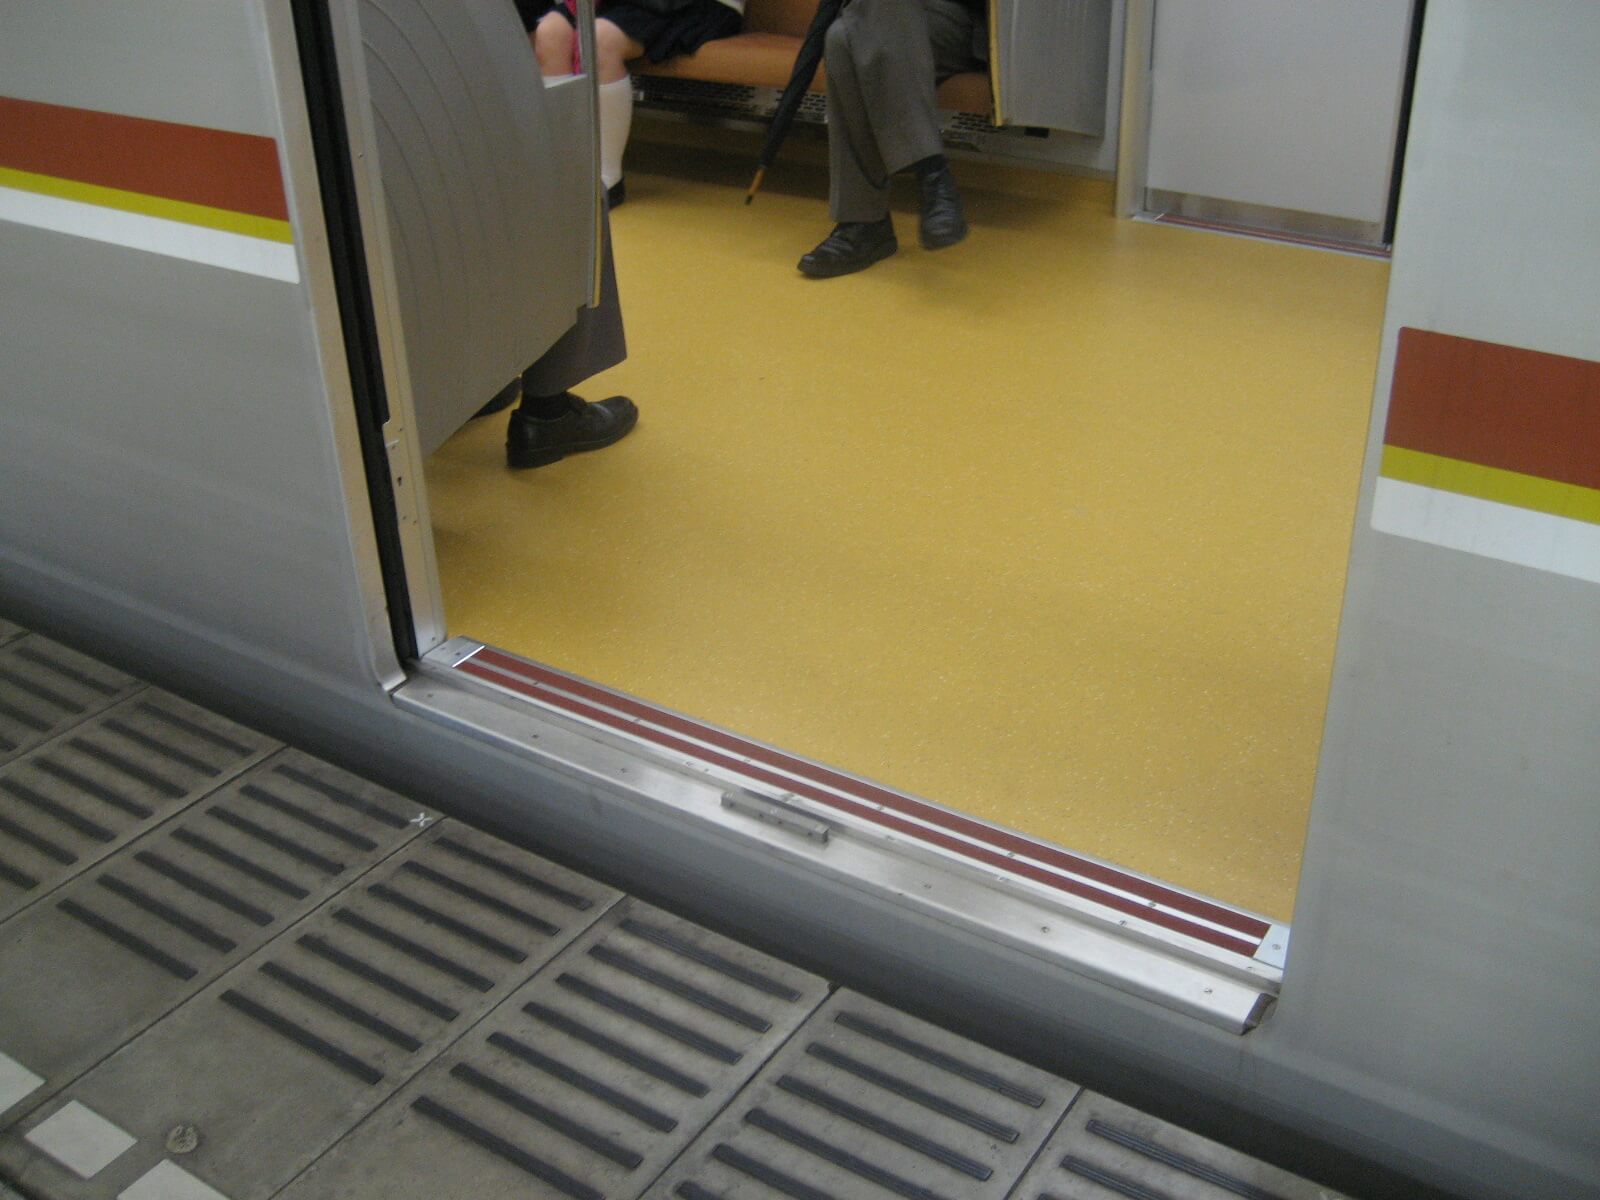 東京メトロ地下鉄車両の見切材として各車両ドアの床面に設置されたハイブリッドストーン アベイラス アンプロップをドアが開いた状態でホームから見た様子